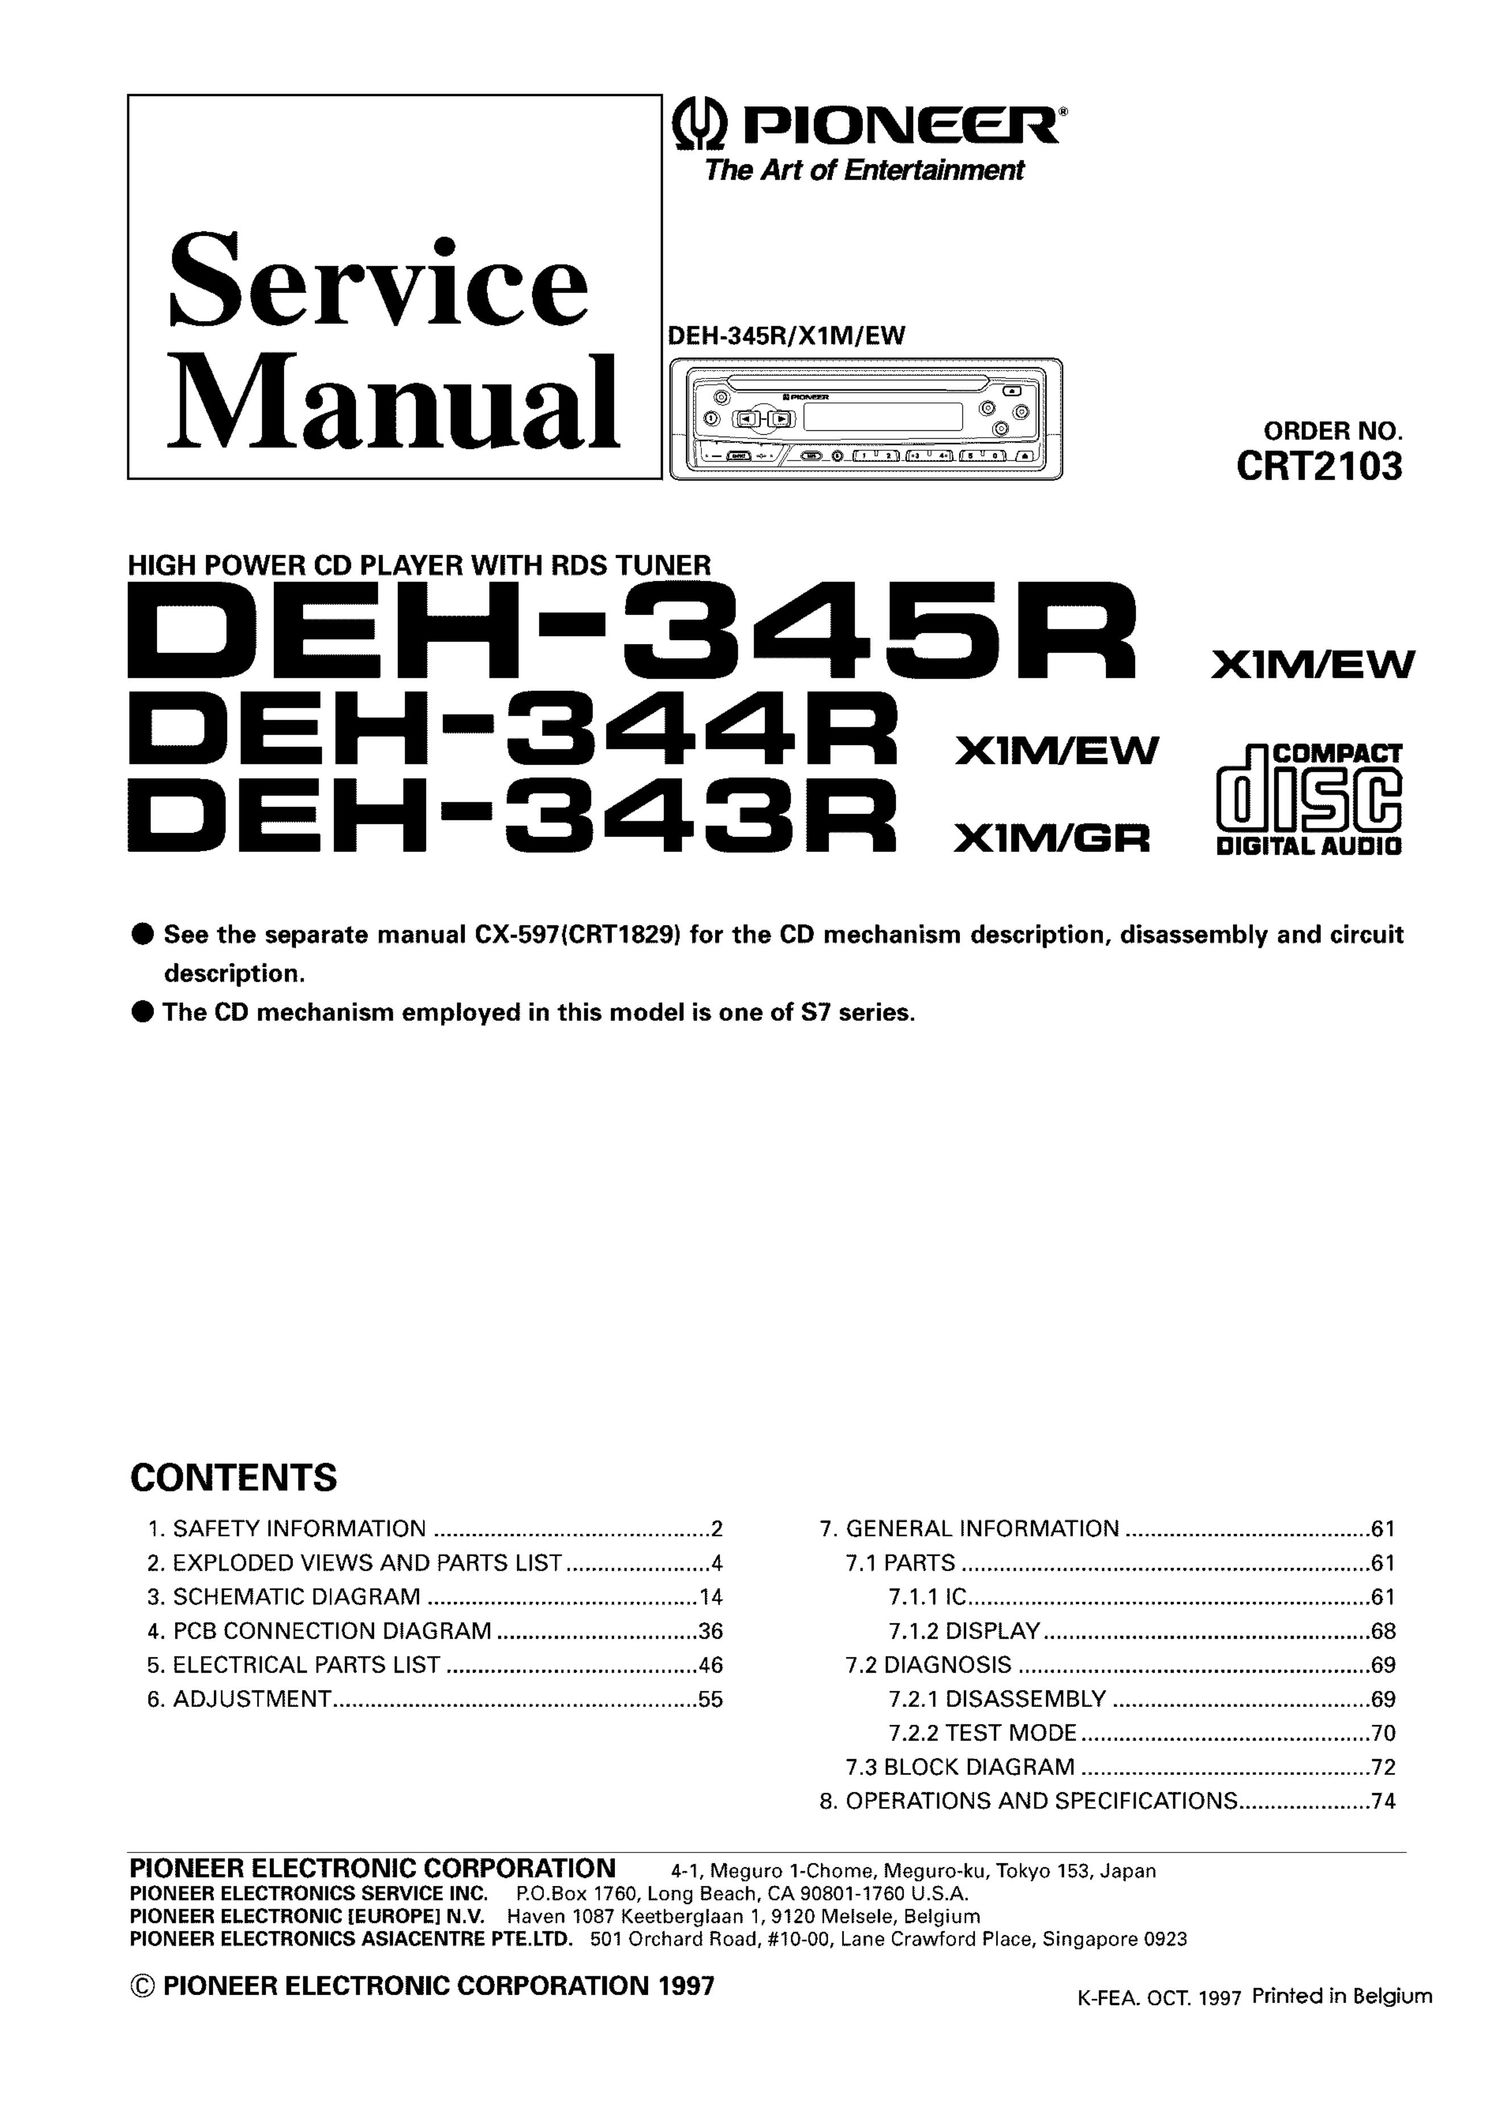 pioneer deh 343 r service manual